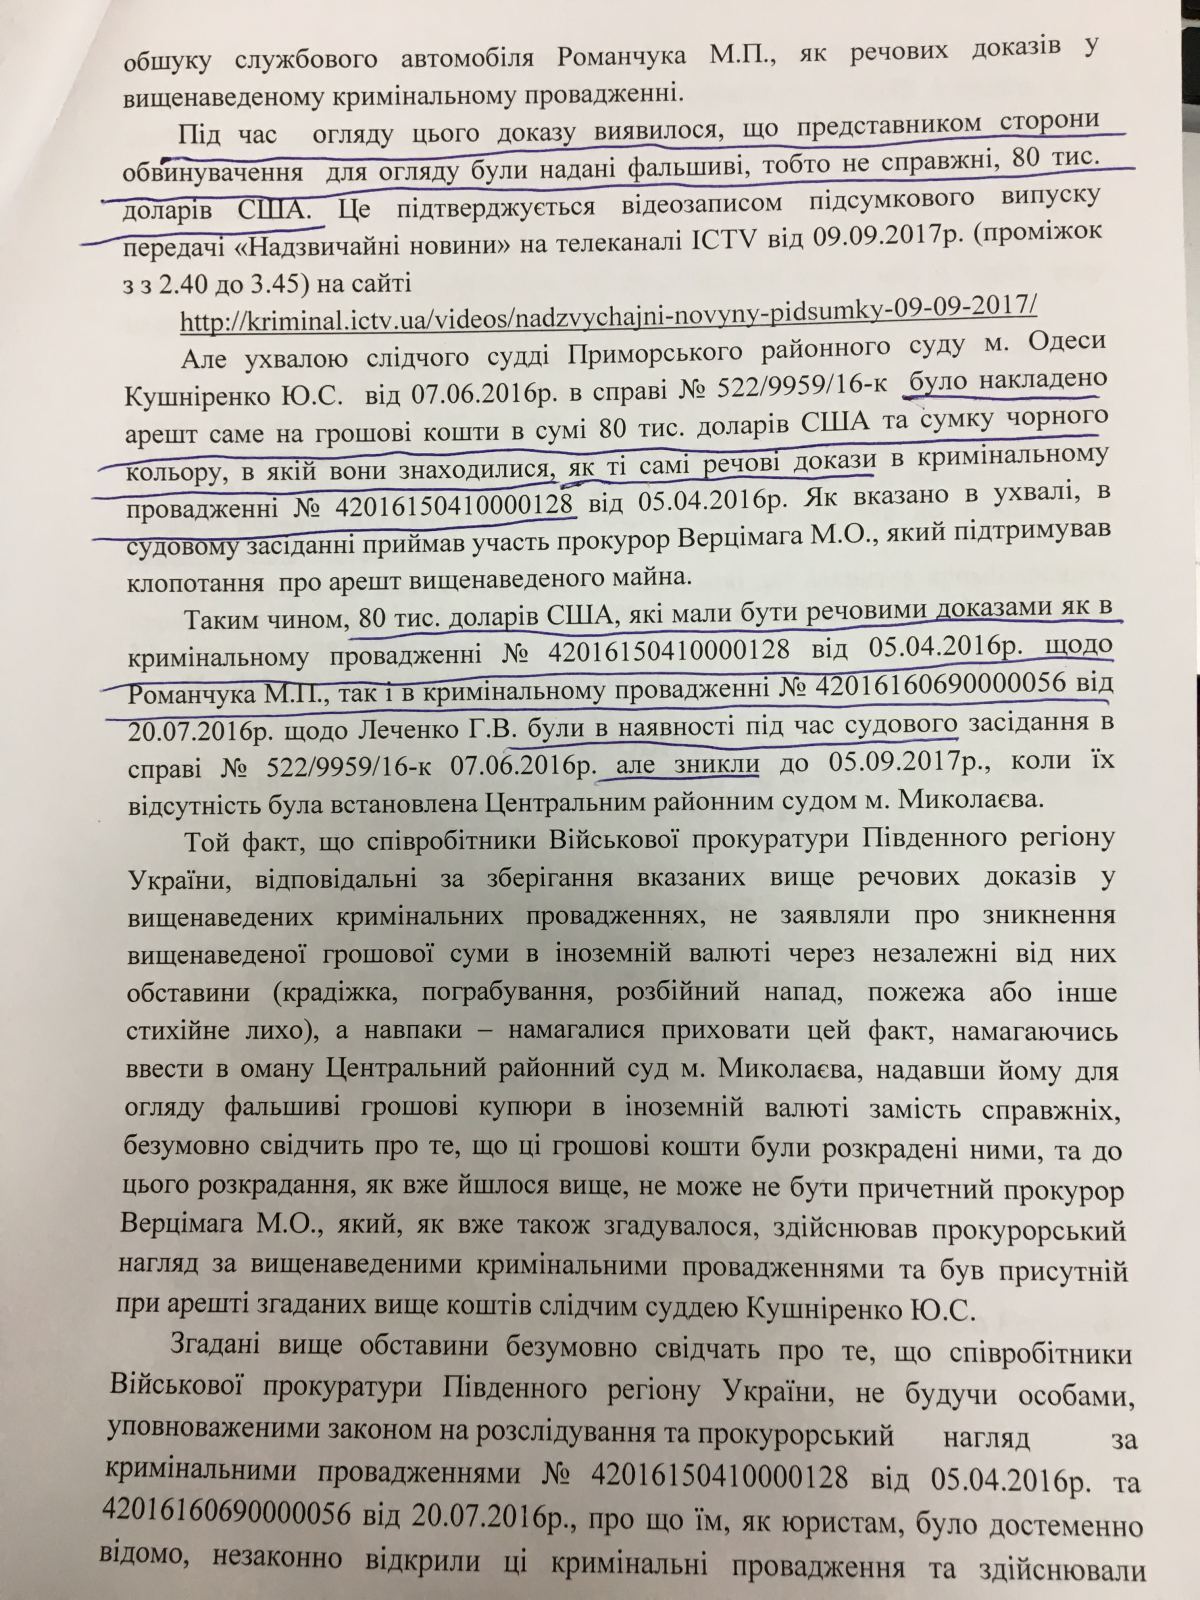 Взяточник Романчук может избежать уголовной ответственности: в деле произошел неожиданный поворот